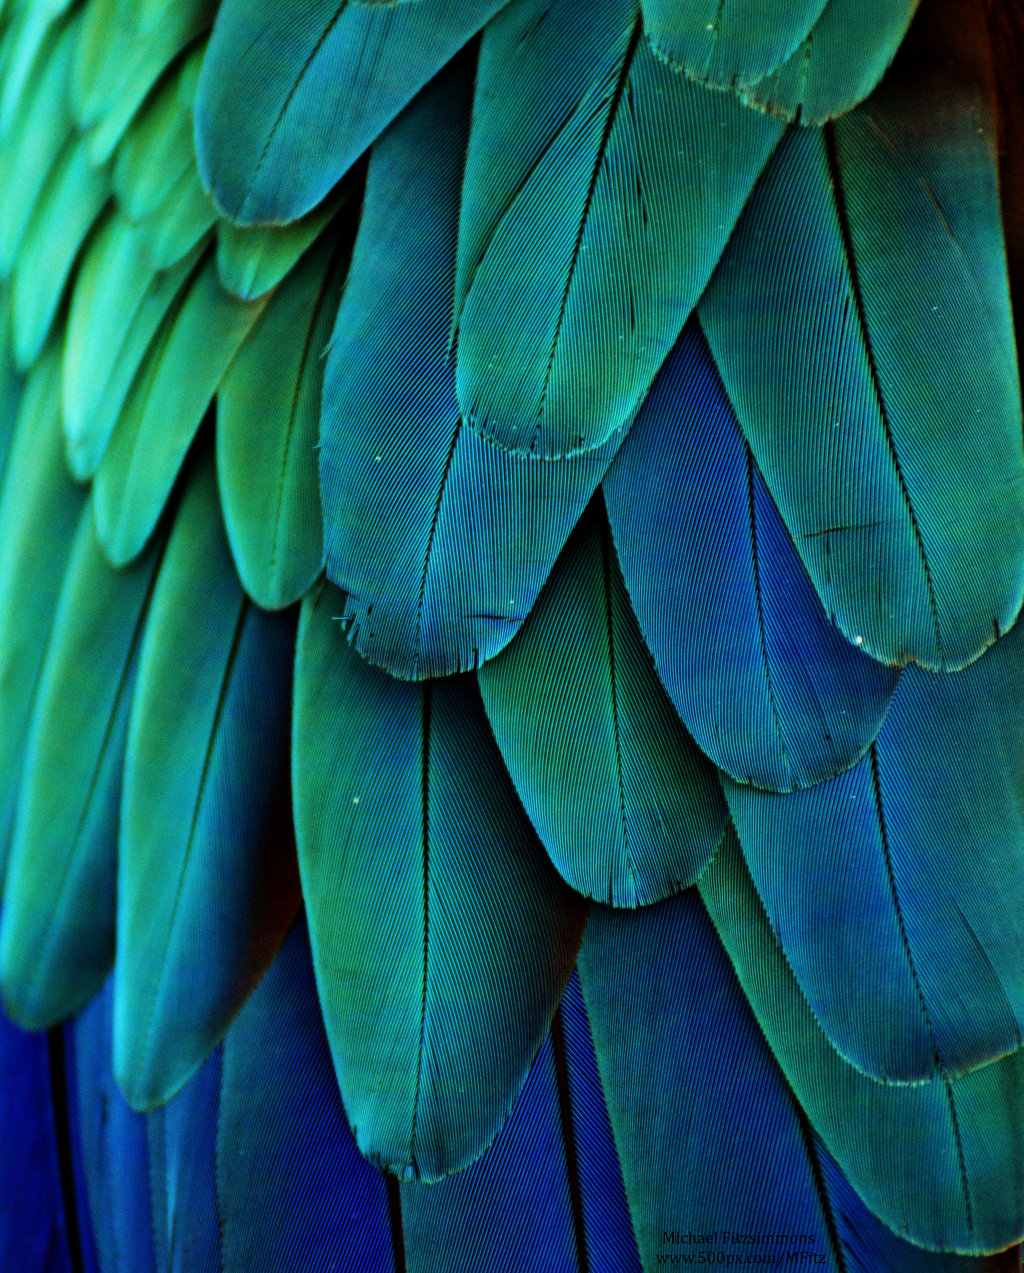 Bluemacaws » La coloración del plumaje como indicador de salud